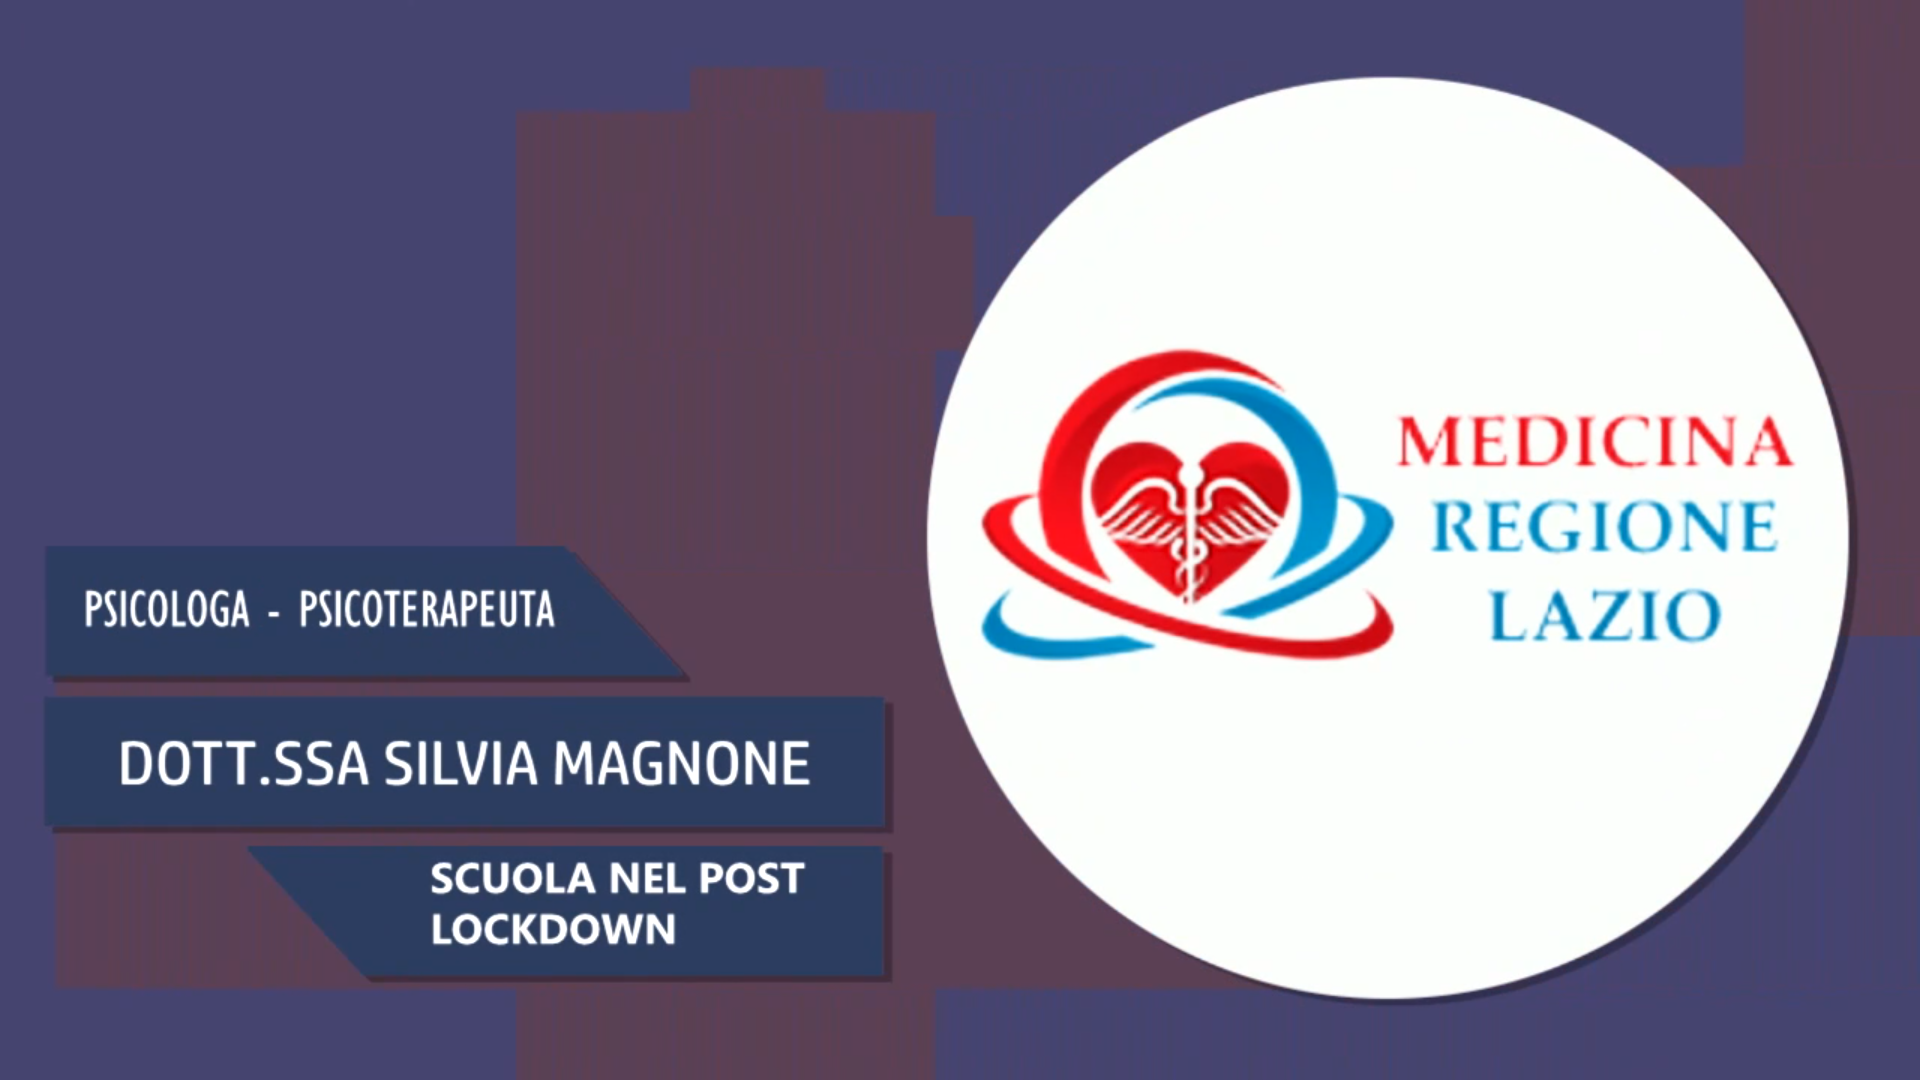 Intervista alla Dott.ssa Silvia Magnone – Scuola nel post lockdown